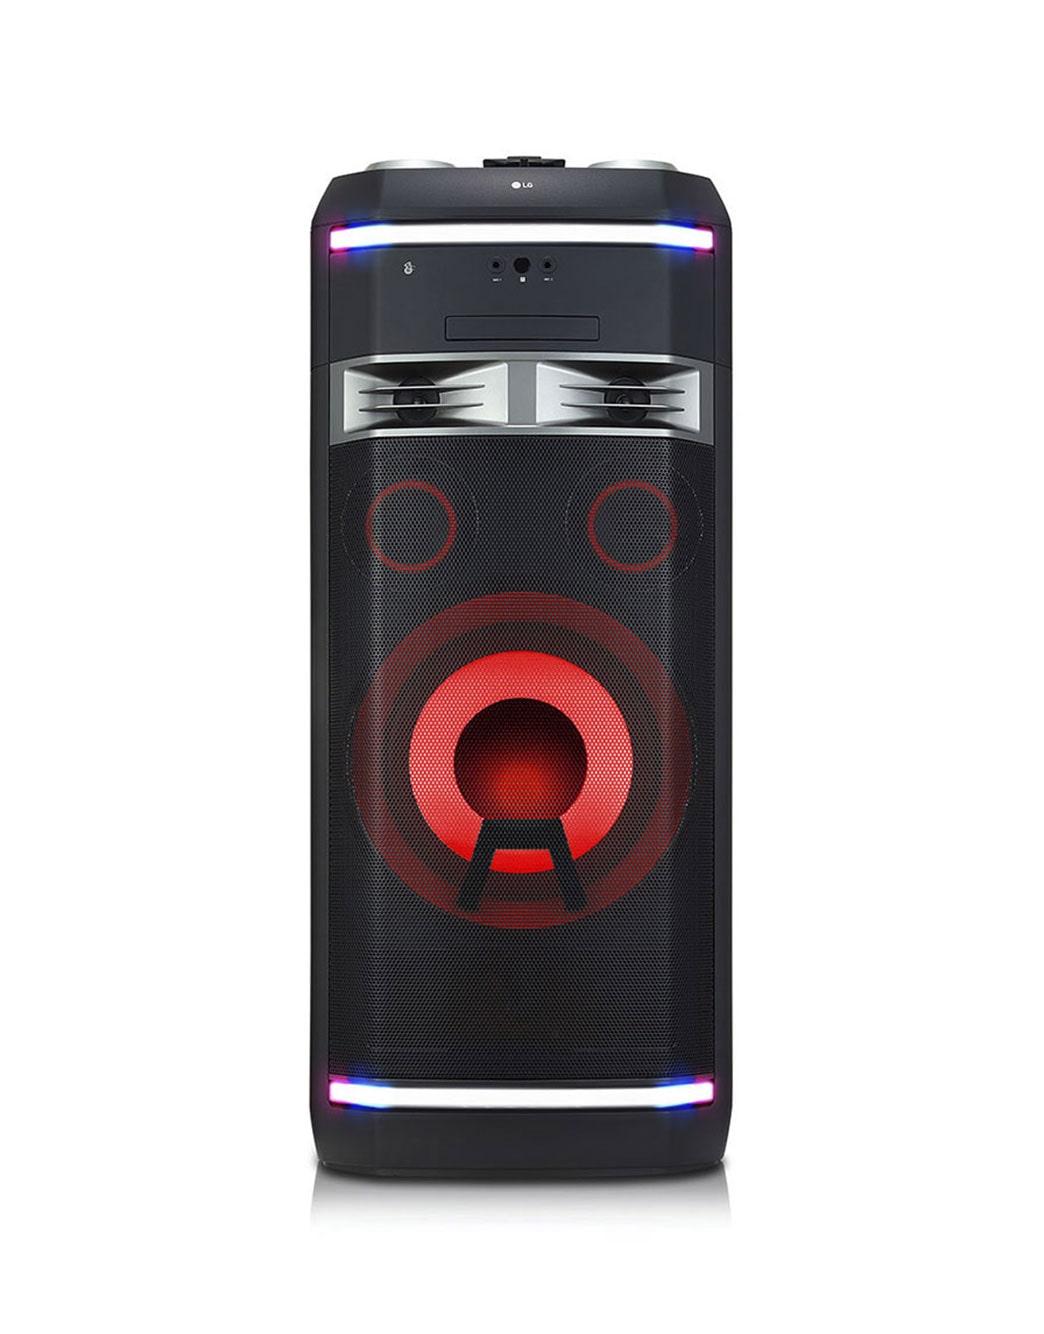 LG XBOOM La Bestia pone el sonido con 2000W de potencia